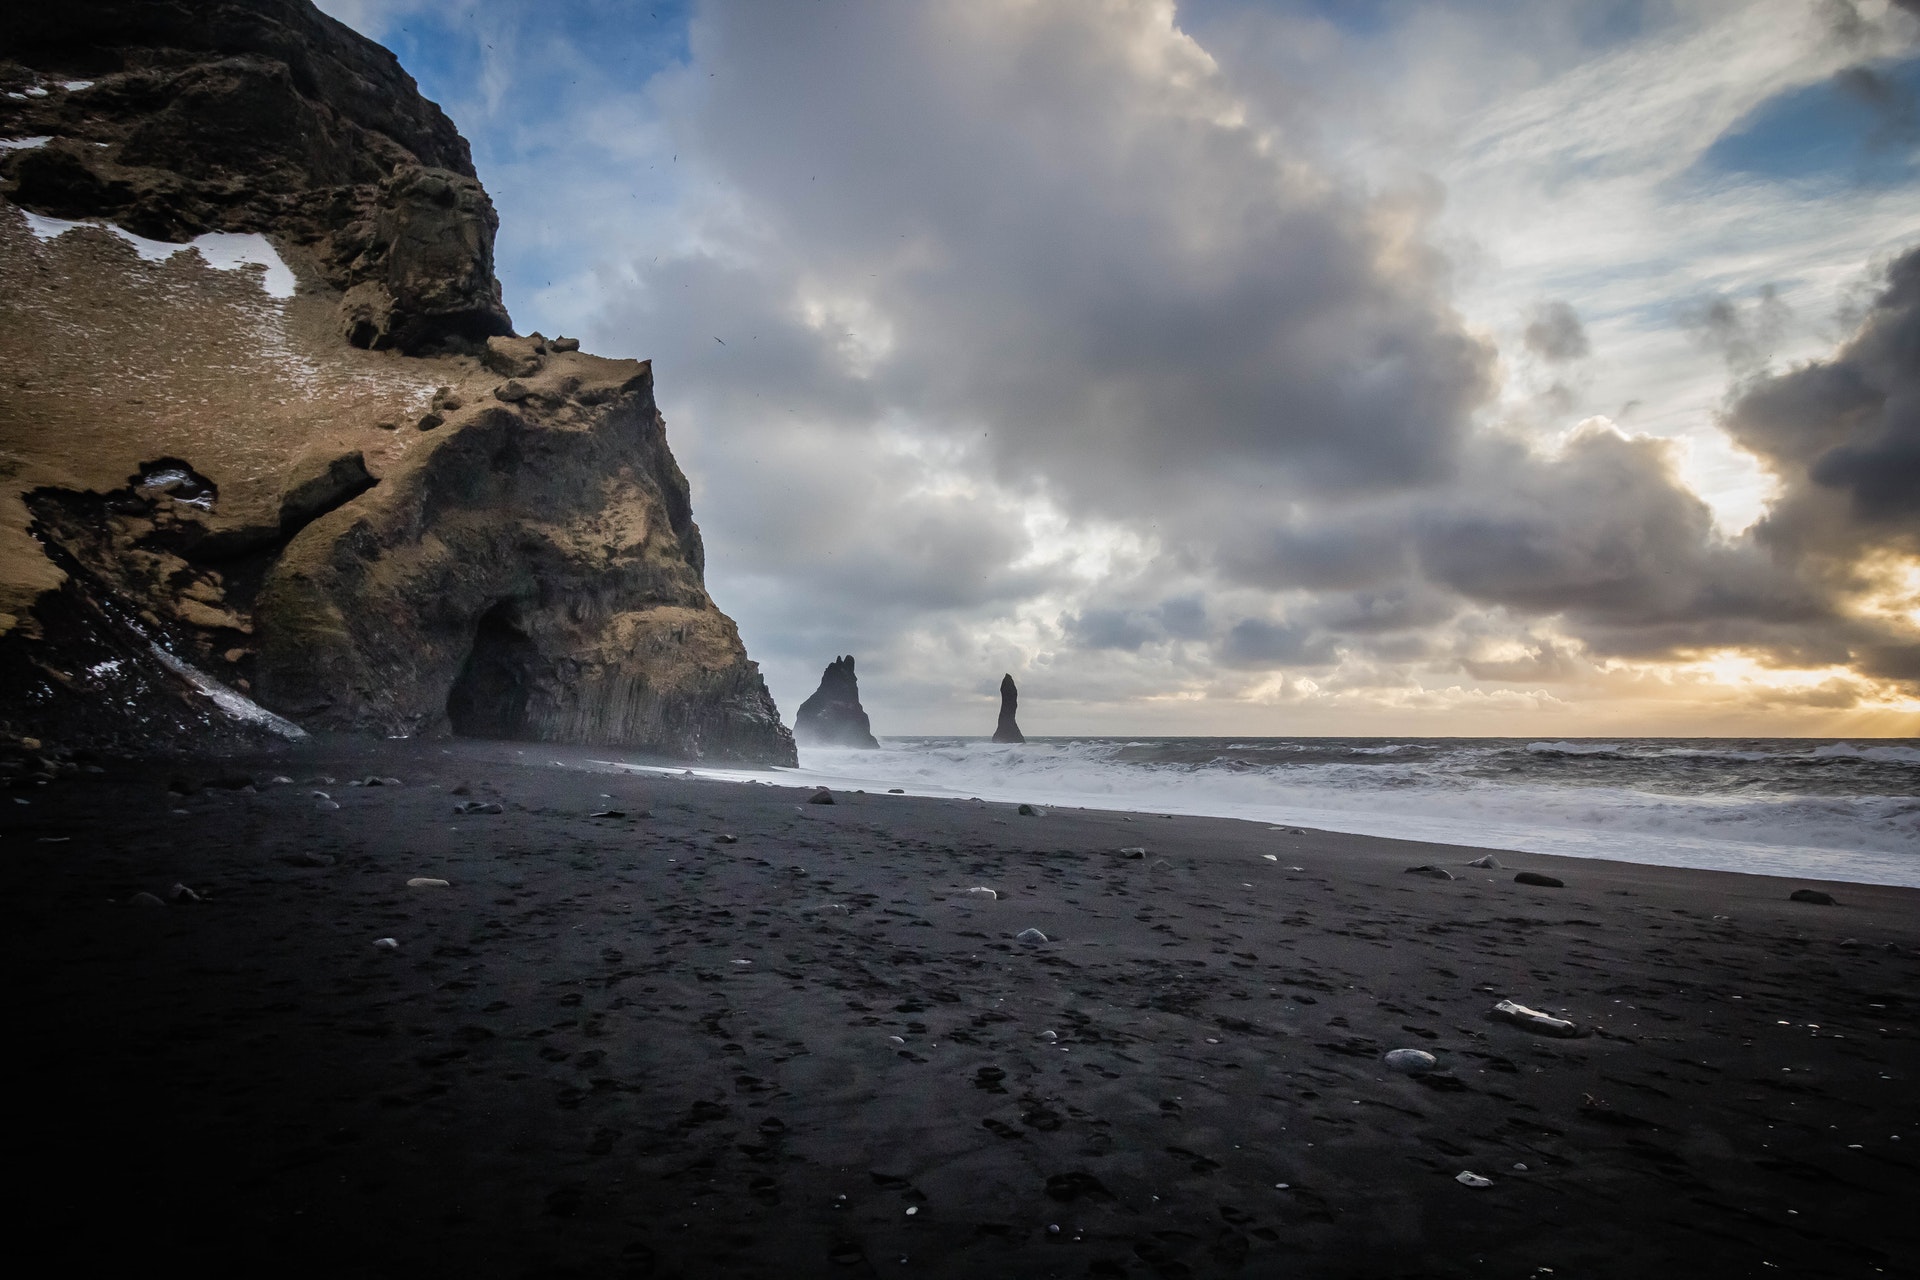 Un magico tour in Islanda, tra spiagge nere e faraglioni altissimi di basaldo